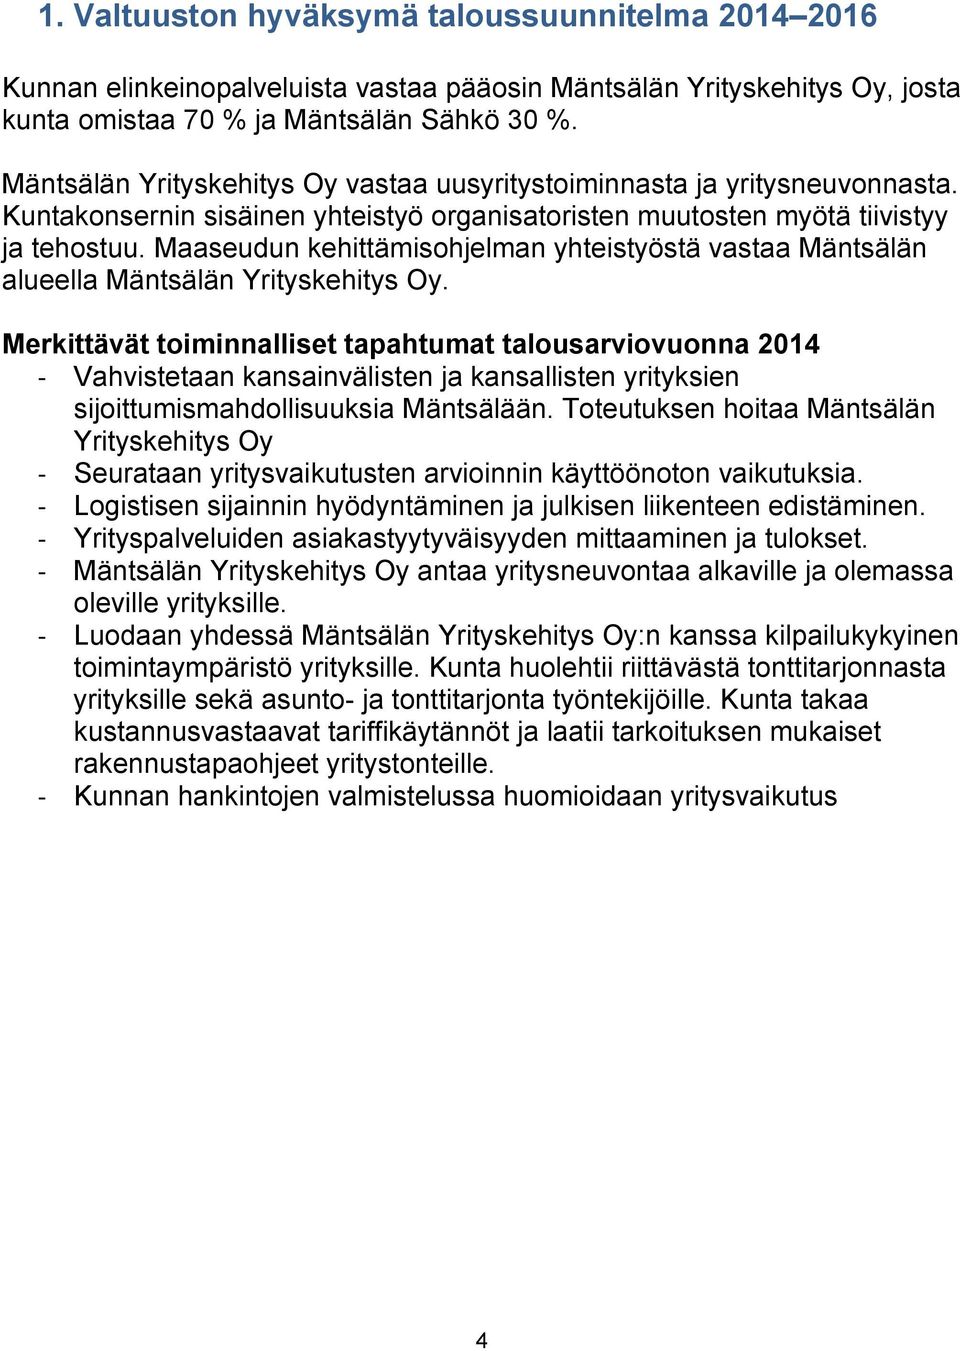 Maaseudun kehittämisohjelman yhteistyöstä vastaa Mäntsälän alueella Mäntsälän Yrityskehitys Oy.